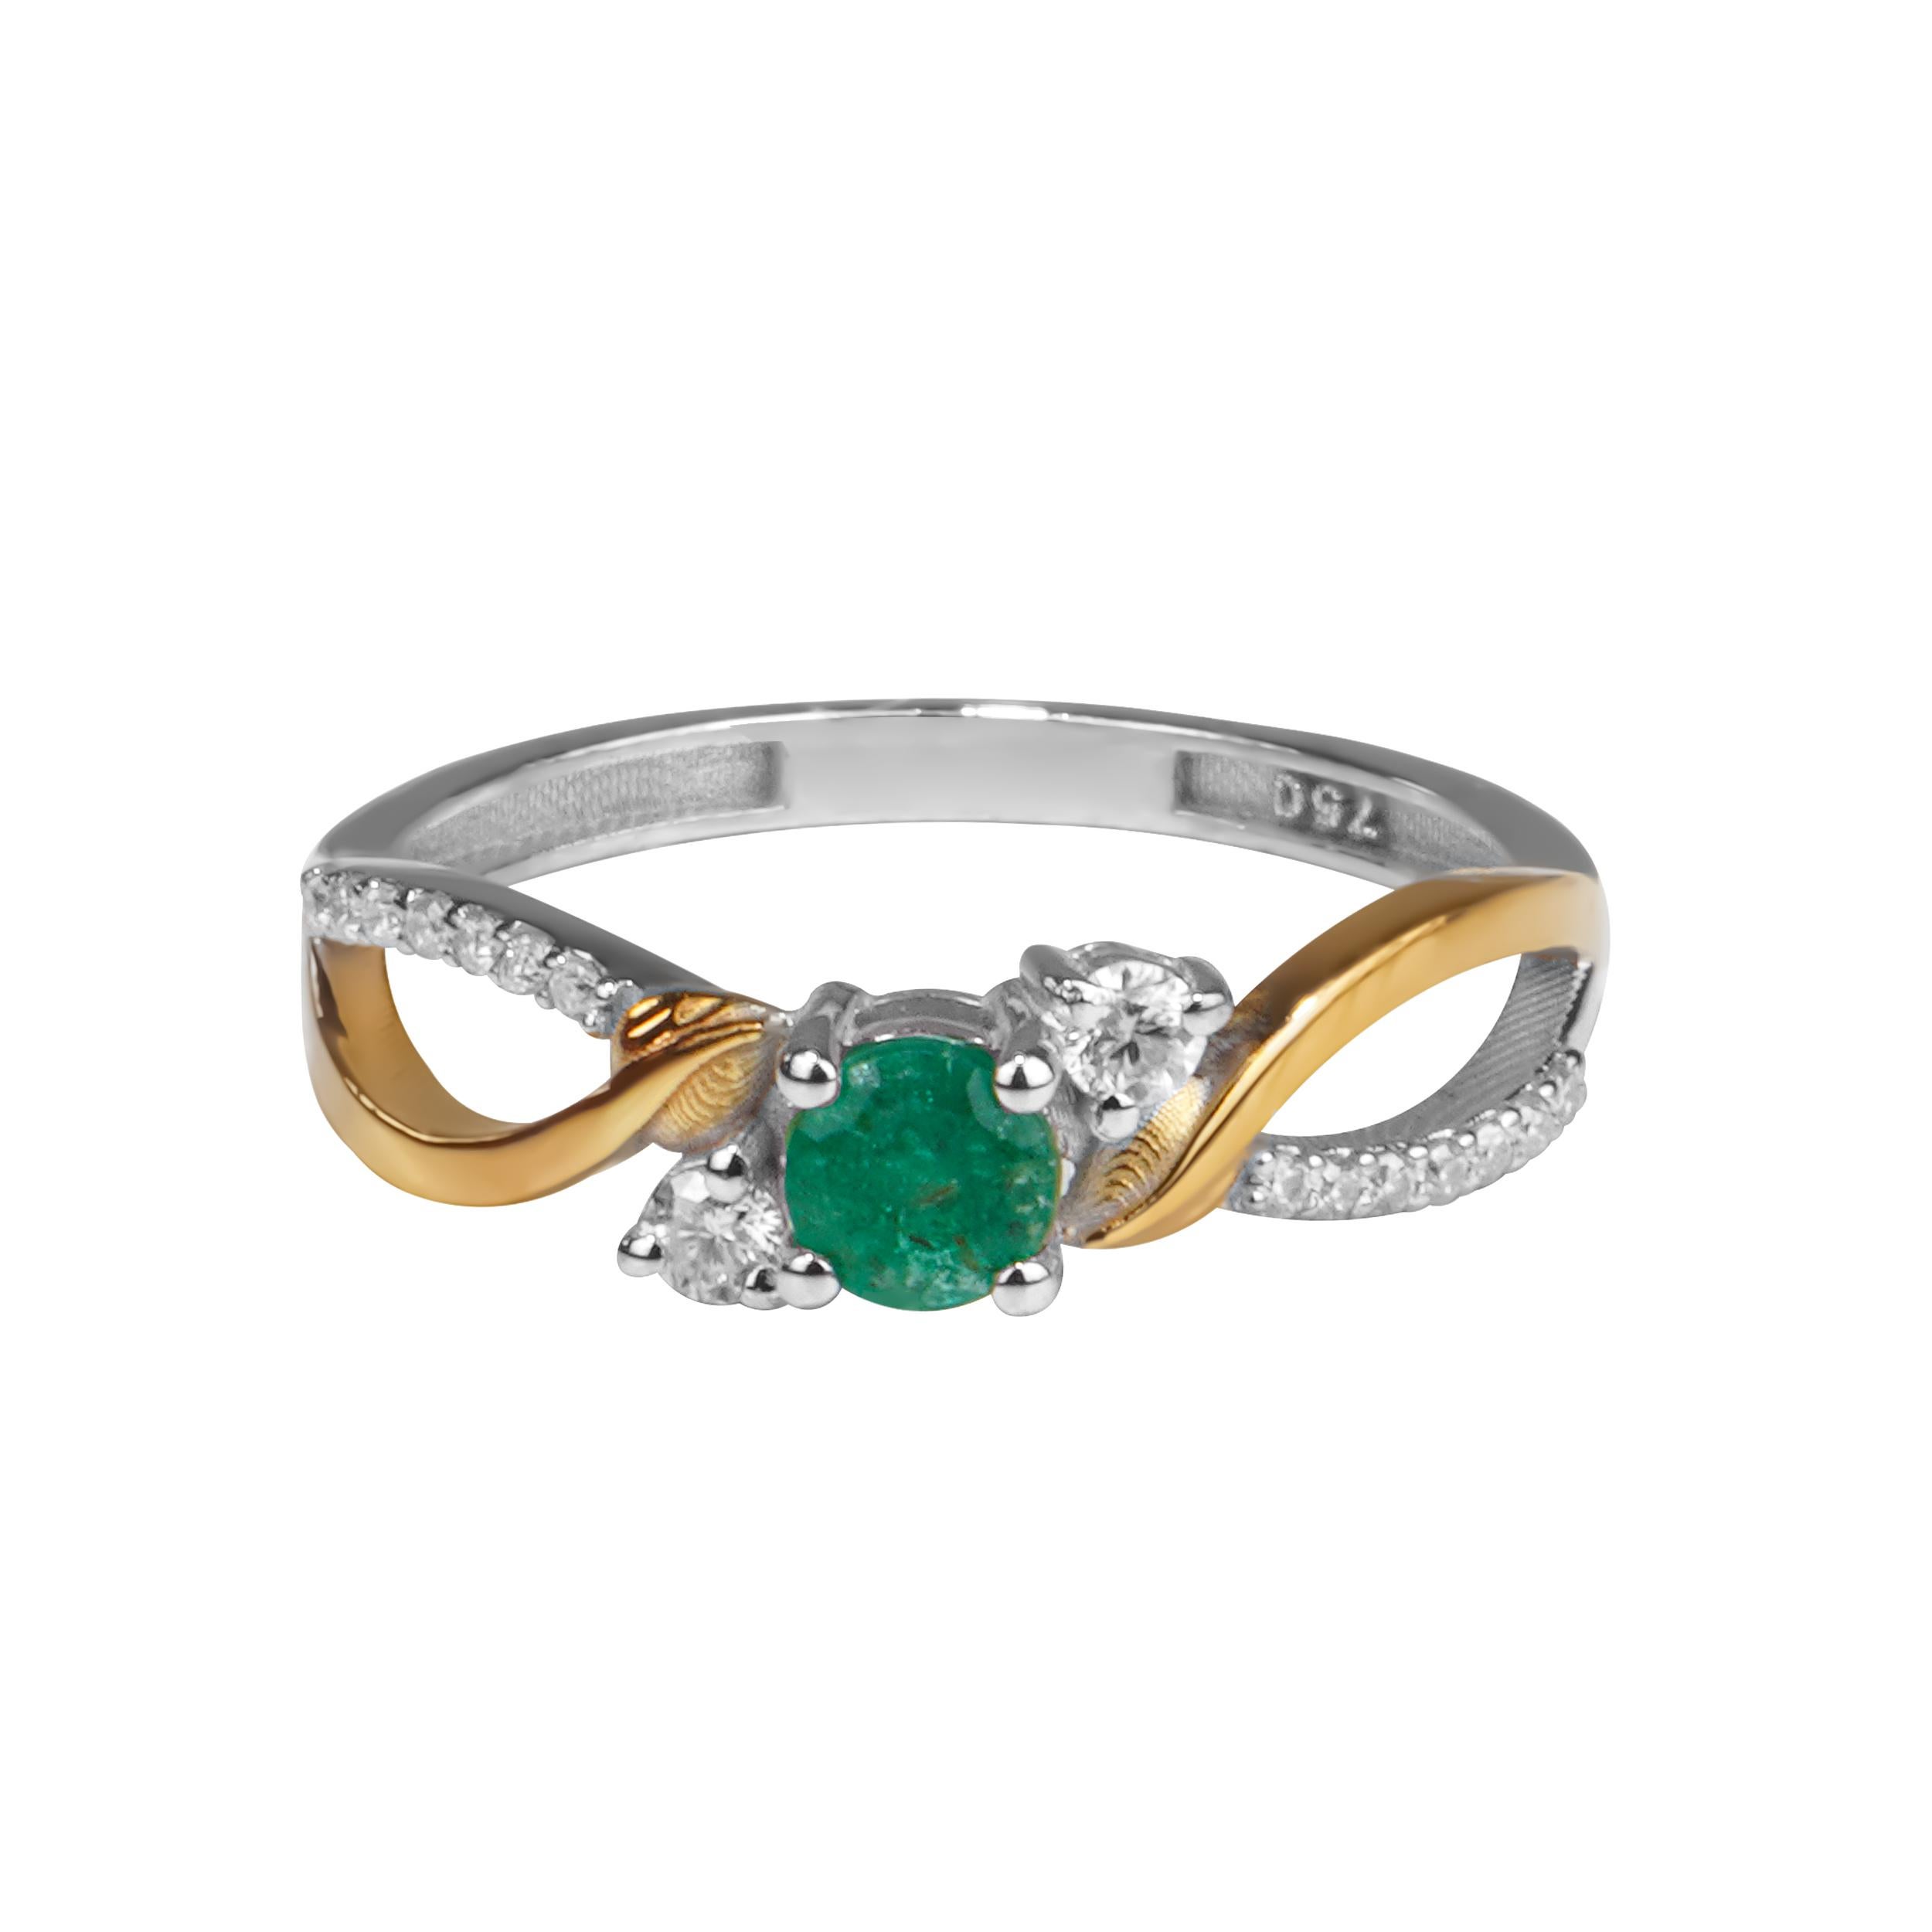 Der Smaragdring lover's universe ist ein atemberaubender und einzigartiger Ring, der die Augen Ihrer Geliebten zum Strahlen bringt. Der Mittelstein dieses Rings ist ein natürlicher, loser Smaragd, der eine leuchtend grüne Farbe und eine reiche